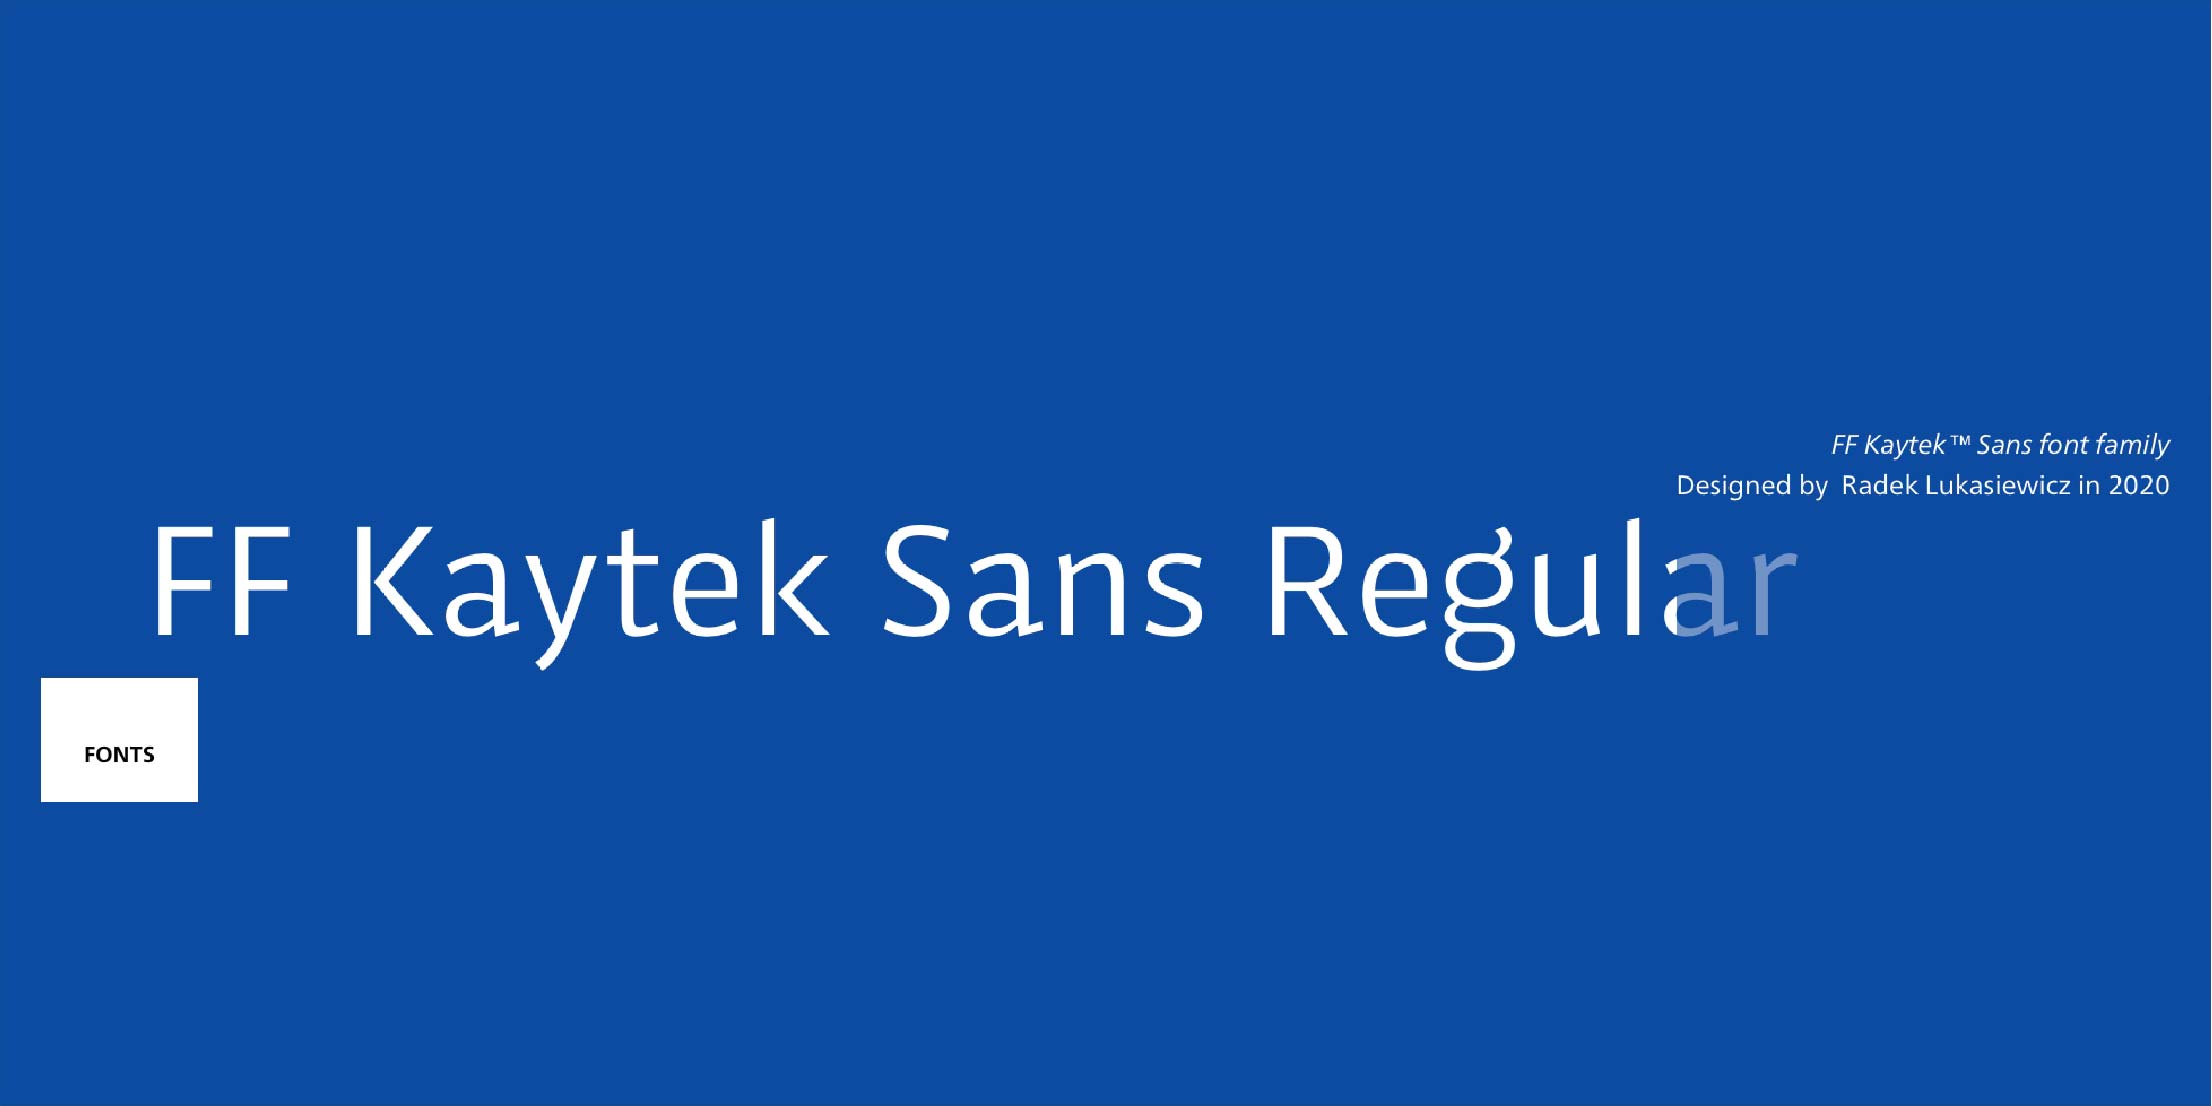 FF Kaytek™ Sans